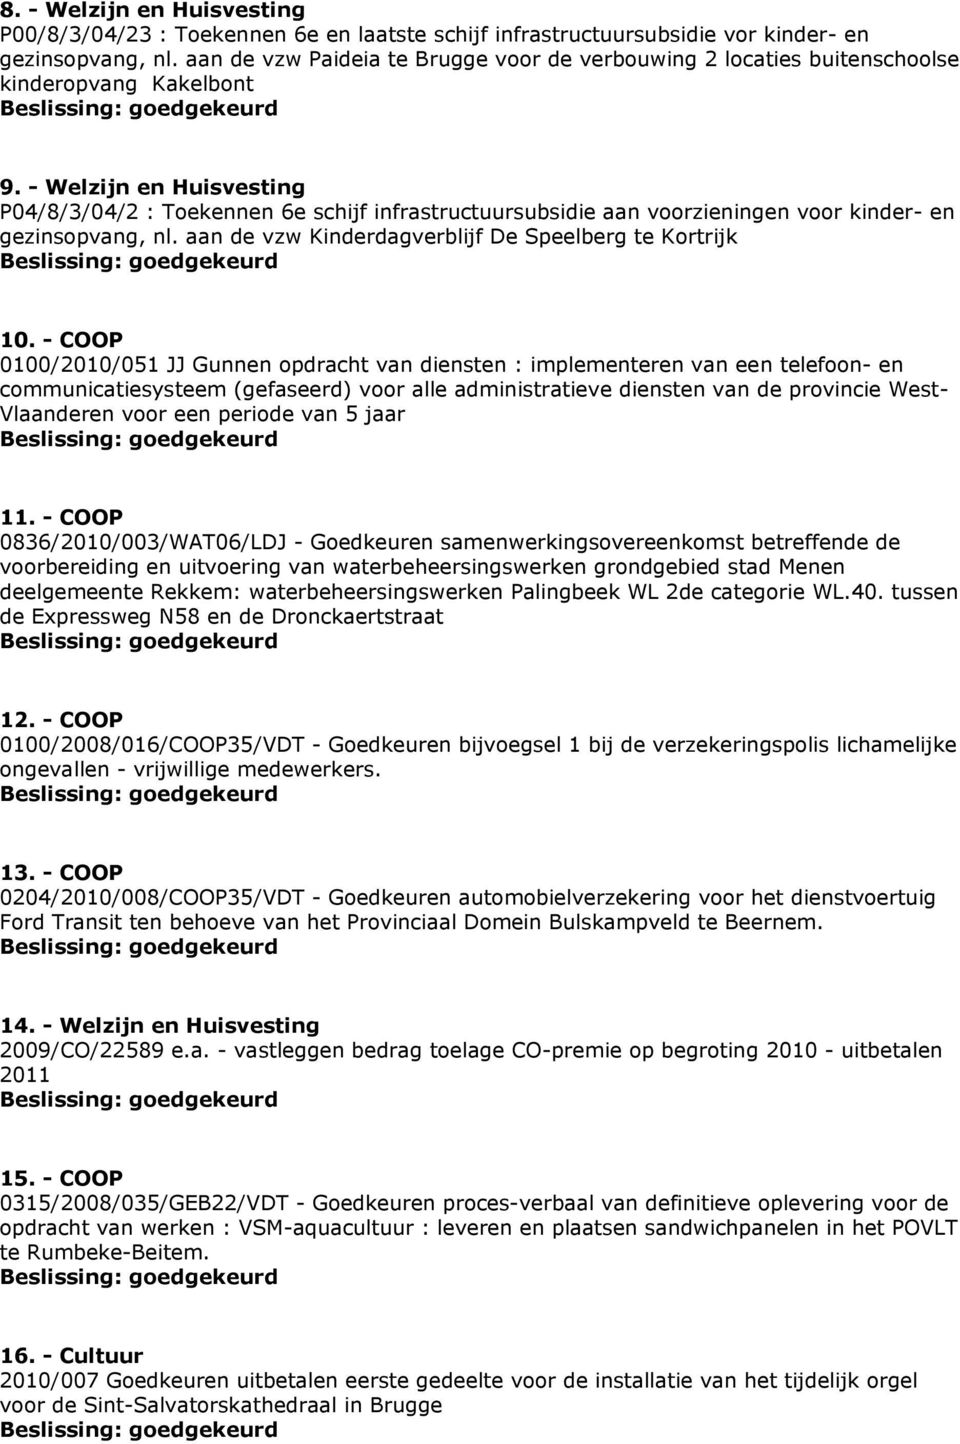 - Welzijn en Huisvesting P04/8/3/04/2 : Toekennen 6e schijf infrastructuursubsidie aan voorzieningen voor kinder- en gezinsopvang, nl. aan de vzw Kinderdagverblijf De Speelberg te Kortrijk 10.